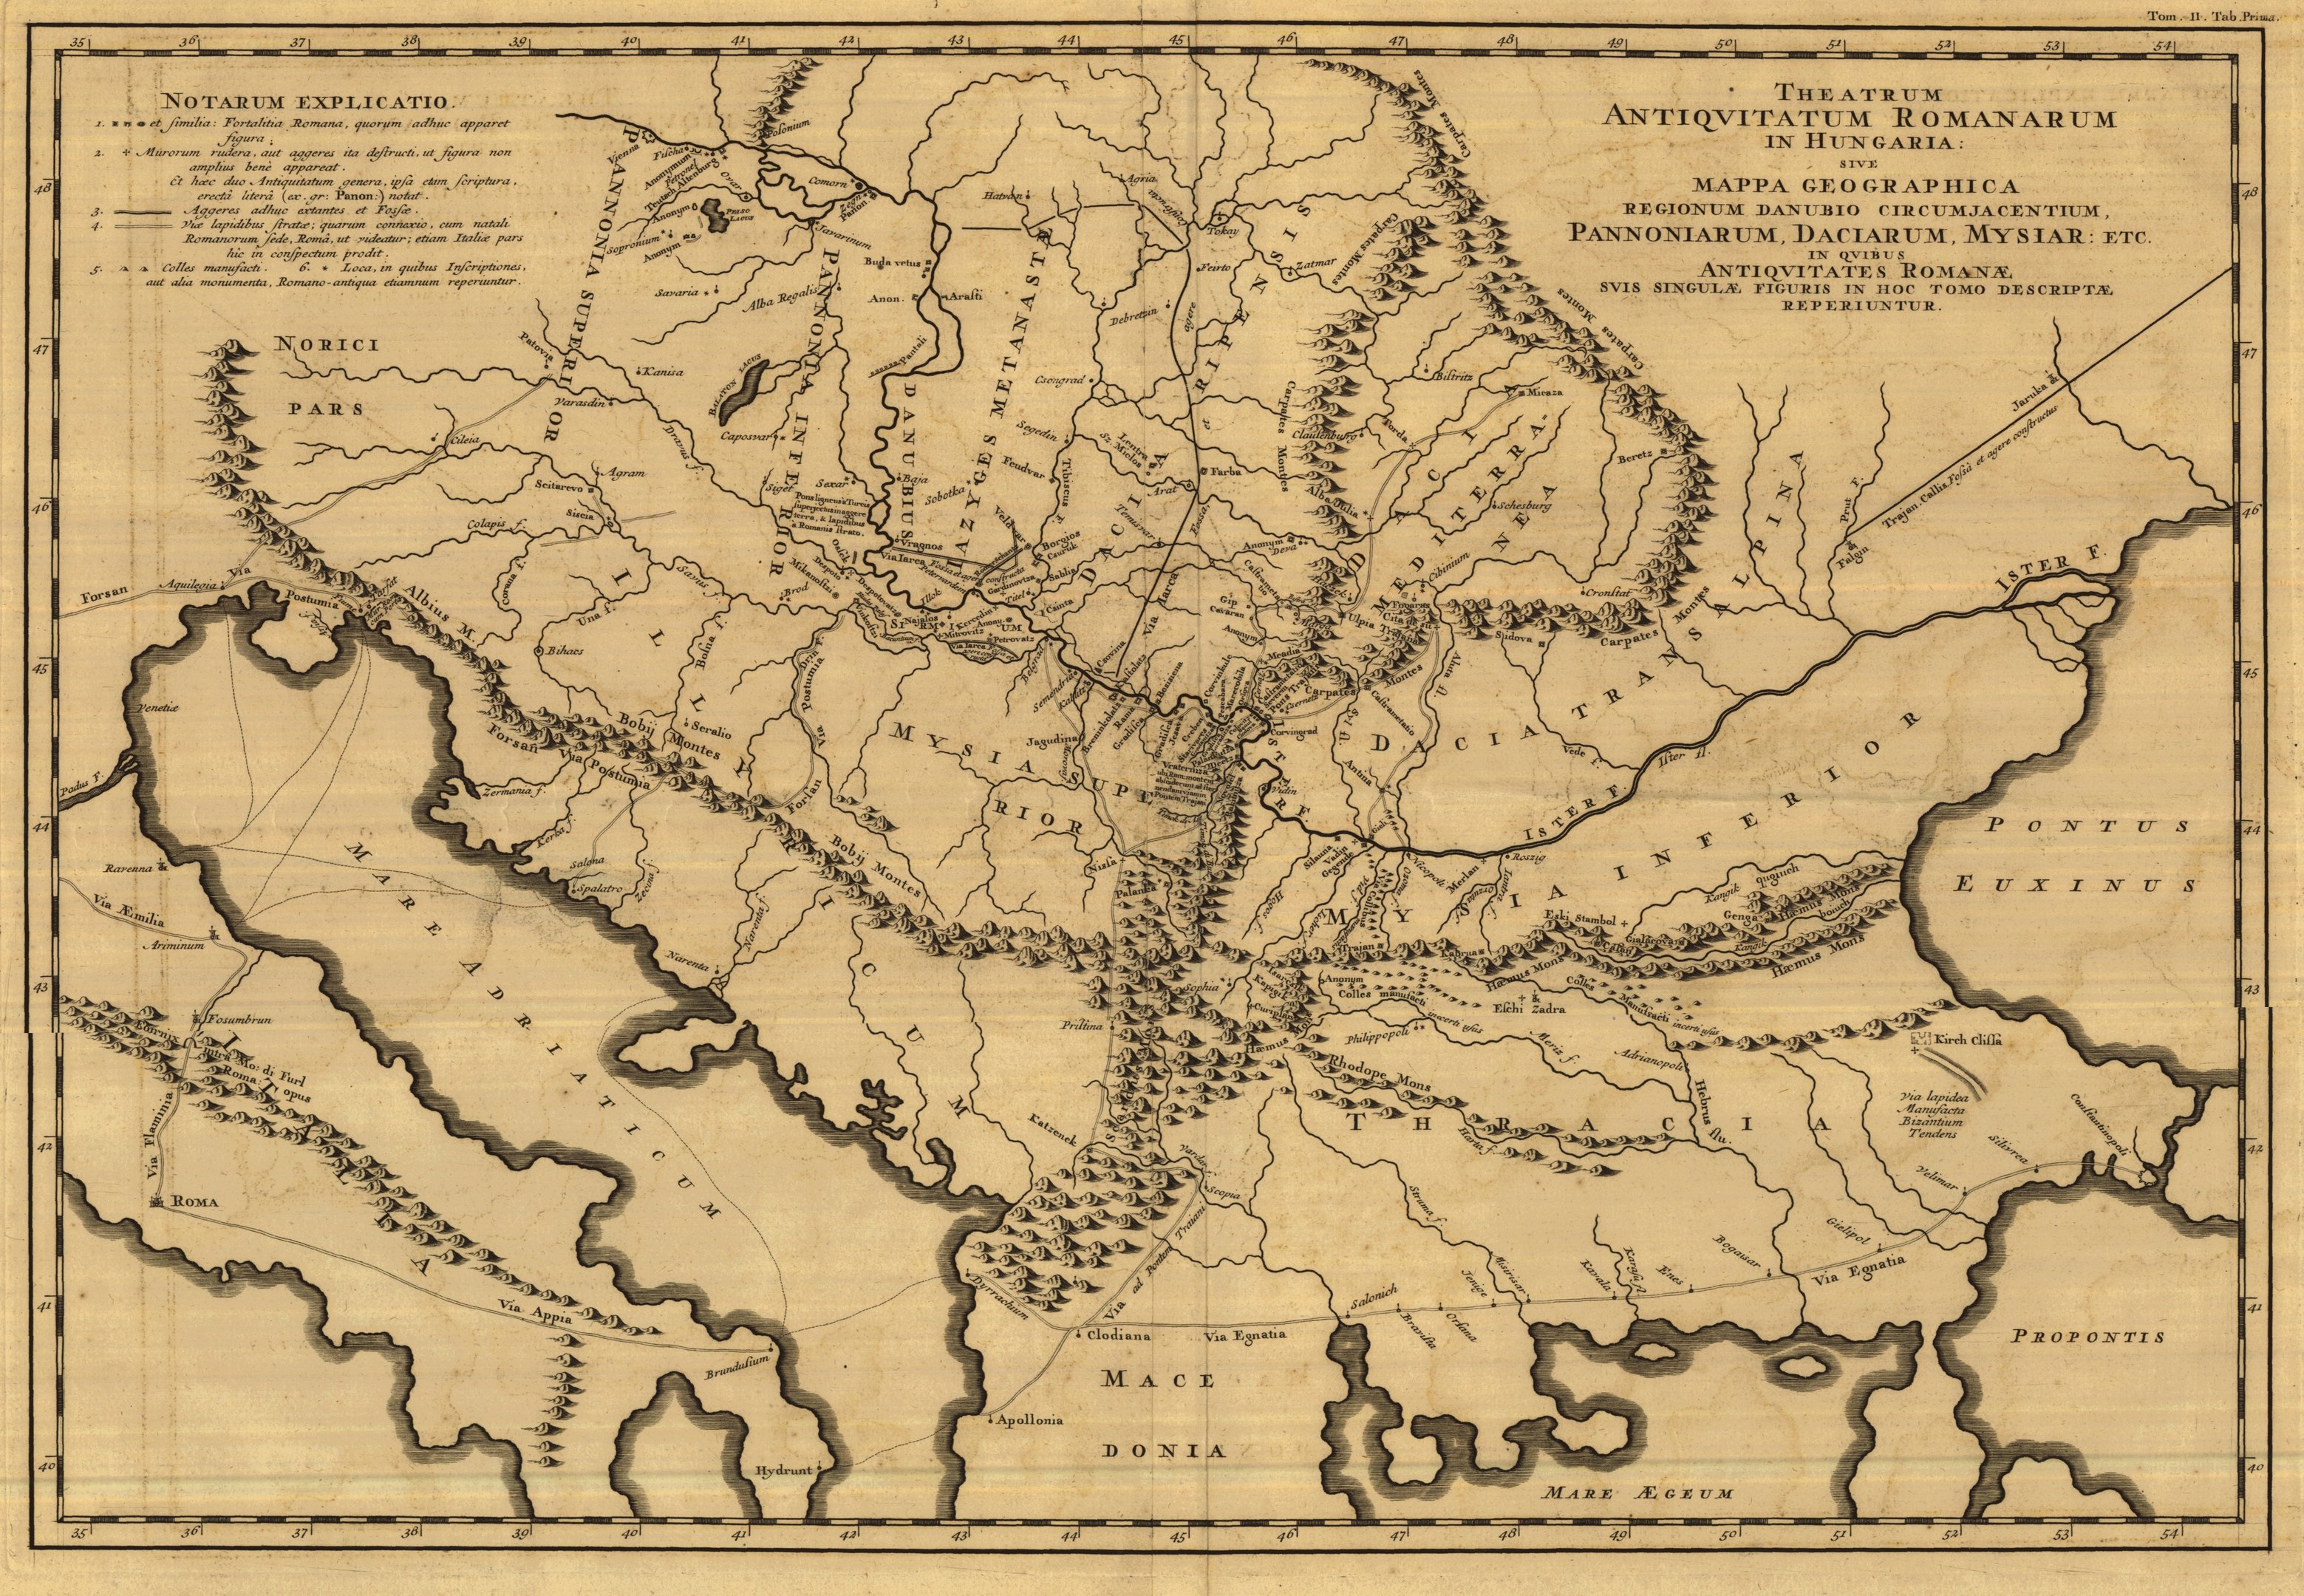 A Magyarországon található római régiségek helyét feltüntető geográfiai térkép, 1726 (Magyar Környezetvédelmi és Vízügyi Múzeum - Duna Múzeum CC BY-NC-SA)